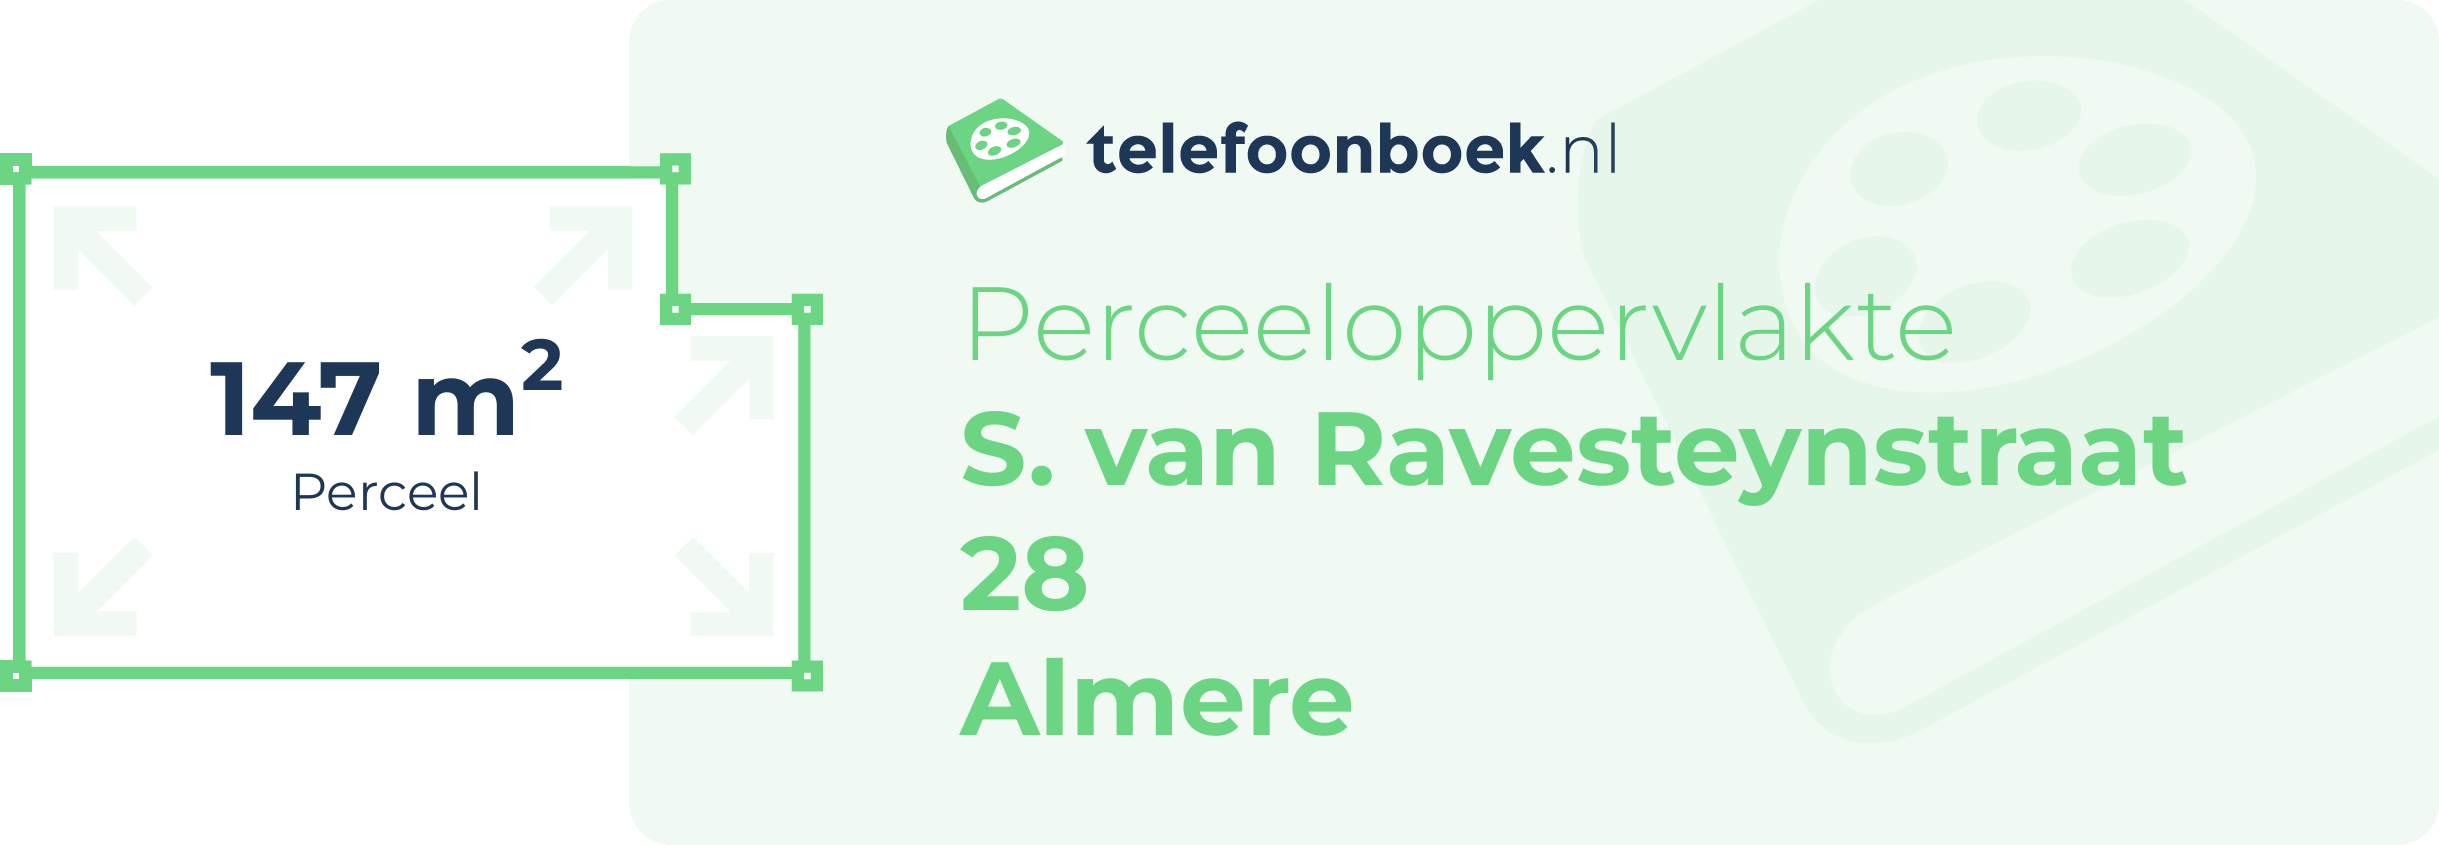 Perceeloppervlakte S. Van Ravesteynstraat 28 Almere